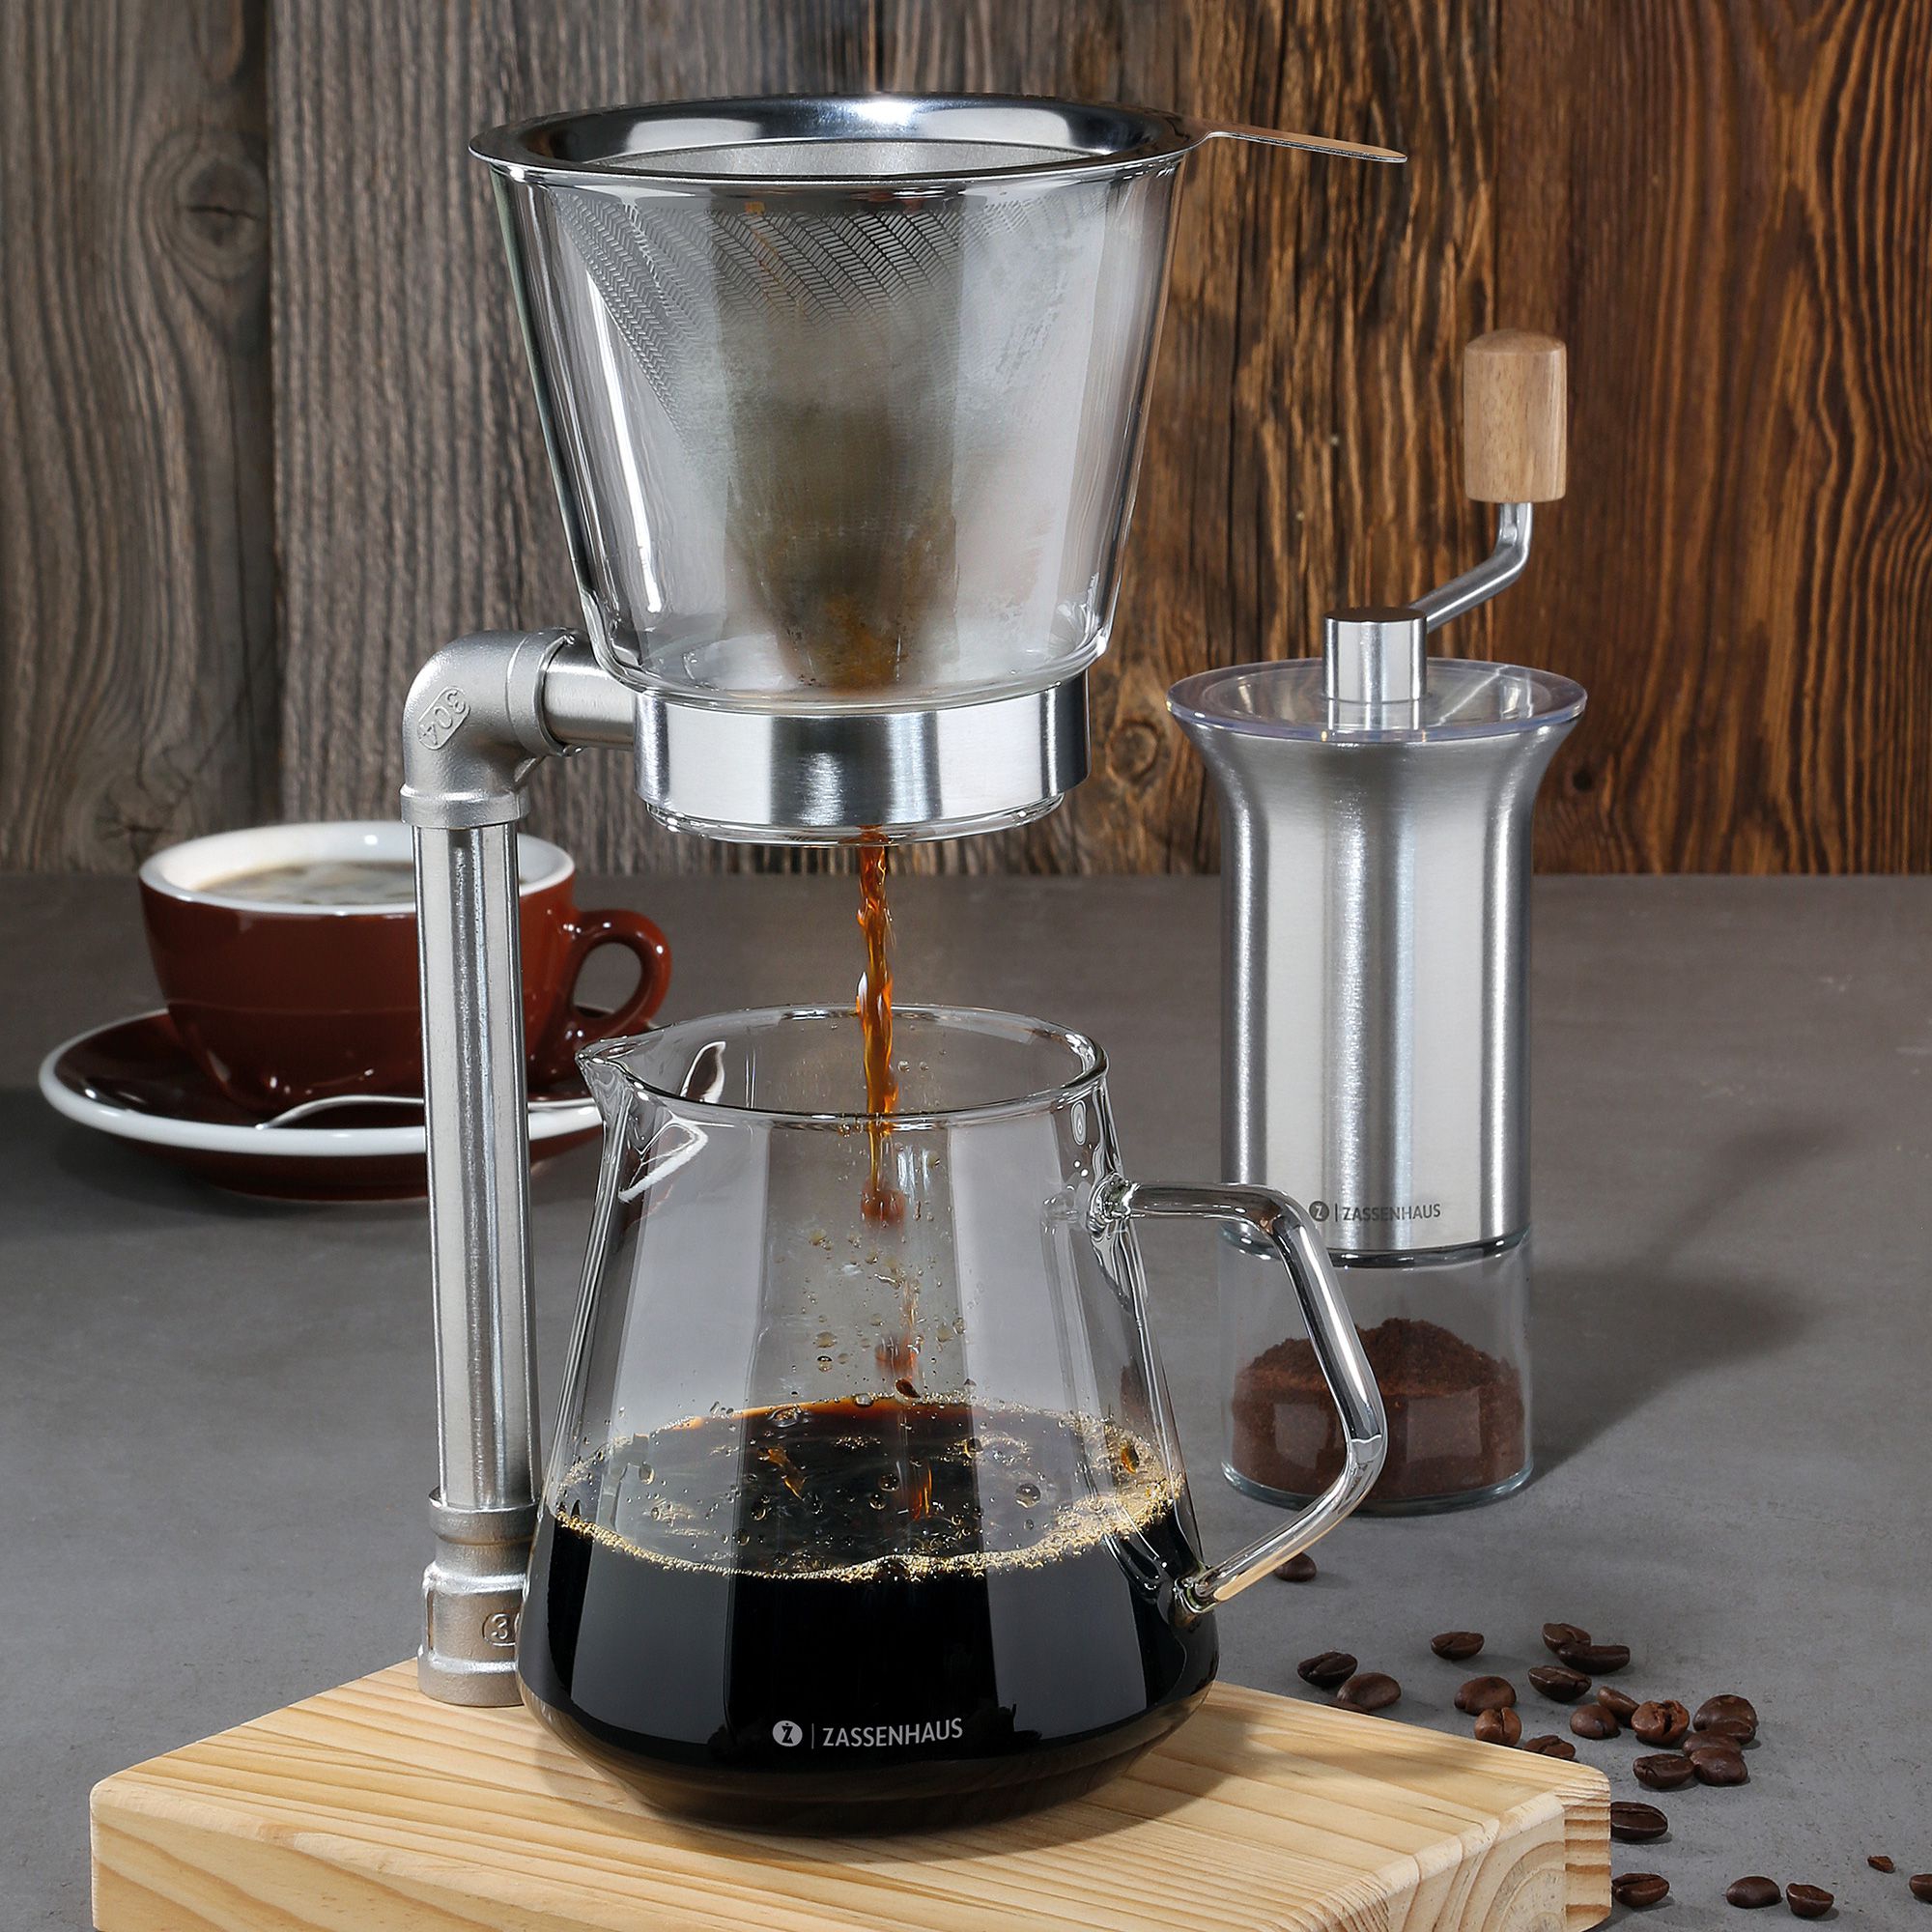 Zassenhaus - Coffee Maker WORKER 6 cups